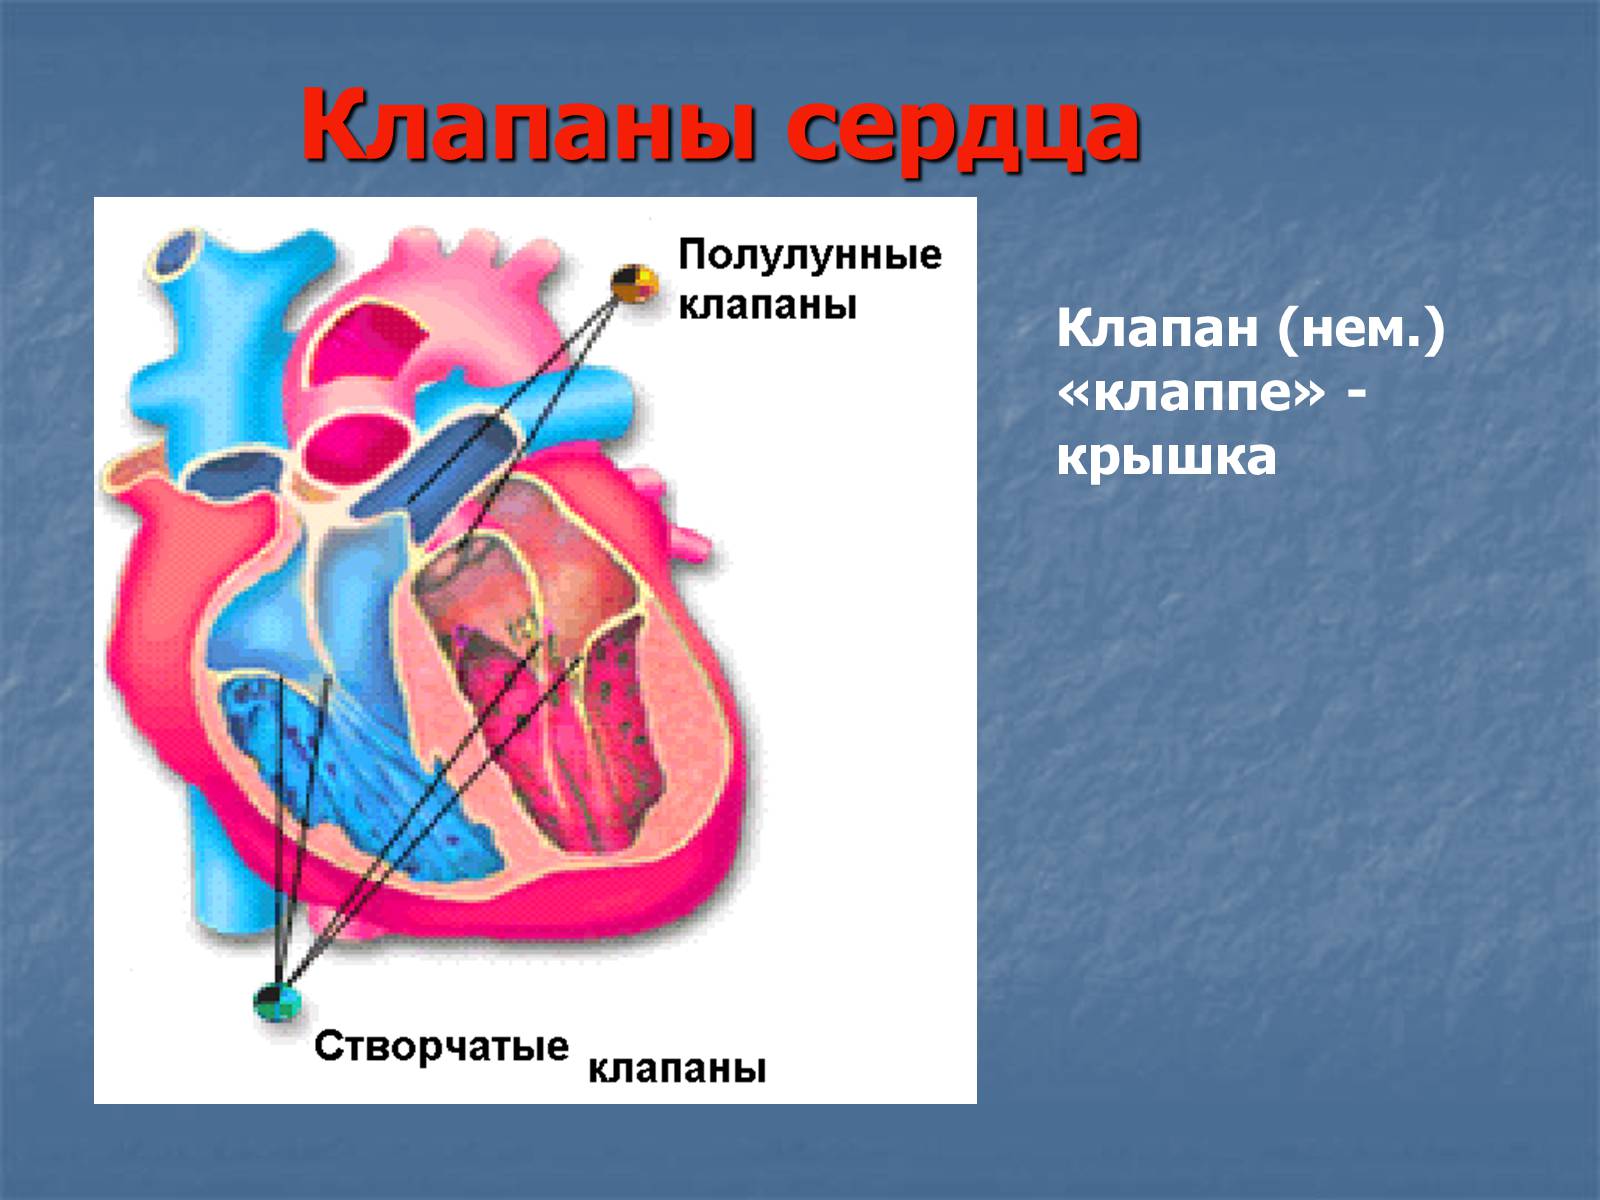 Какую функцию выполняет полулунный клапан. Створчатый и полулунный клапан. Полулунный клапан сердца. Клапаны сердца атриовентрикулярные клапаны. Сердце человека полулунные клапаны.